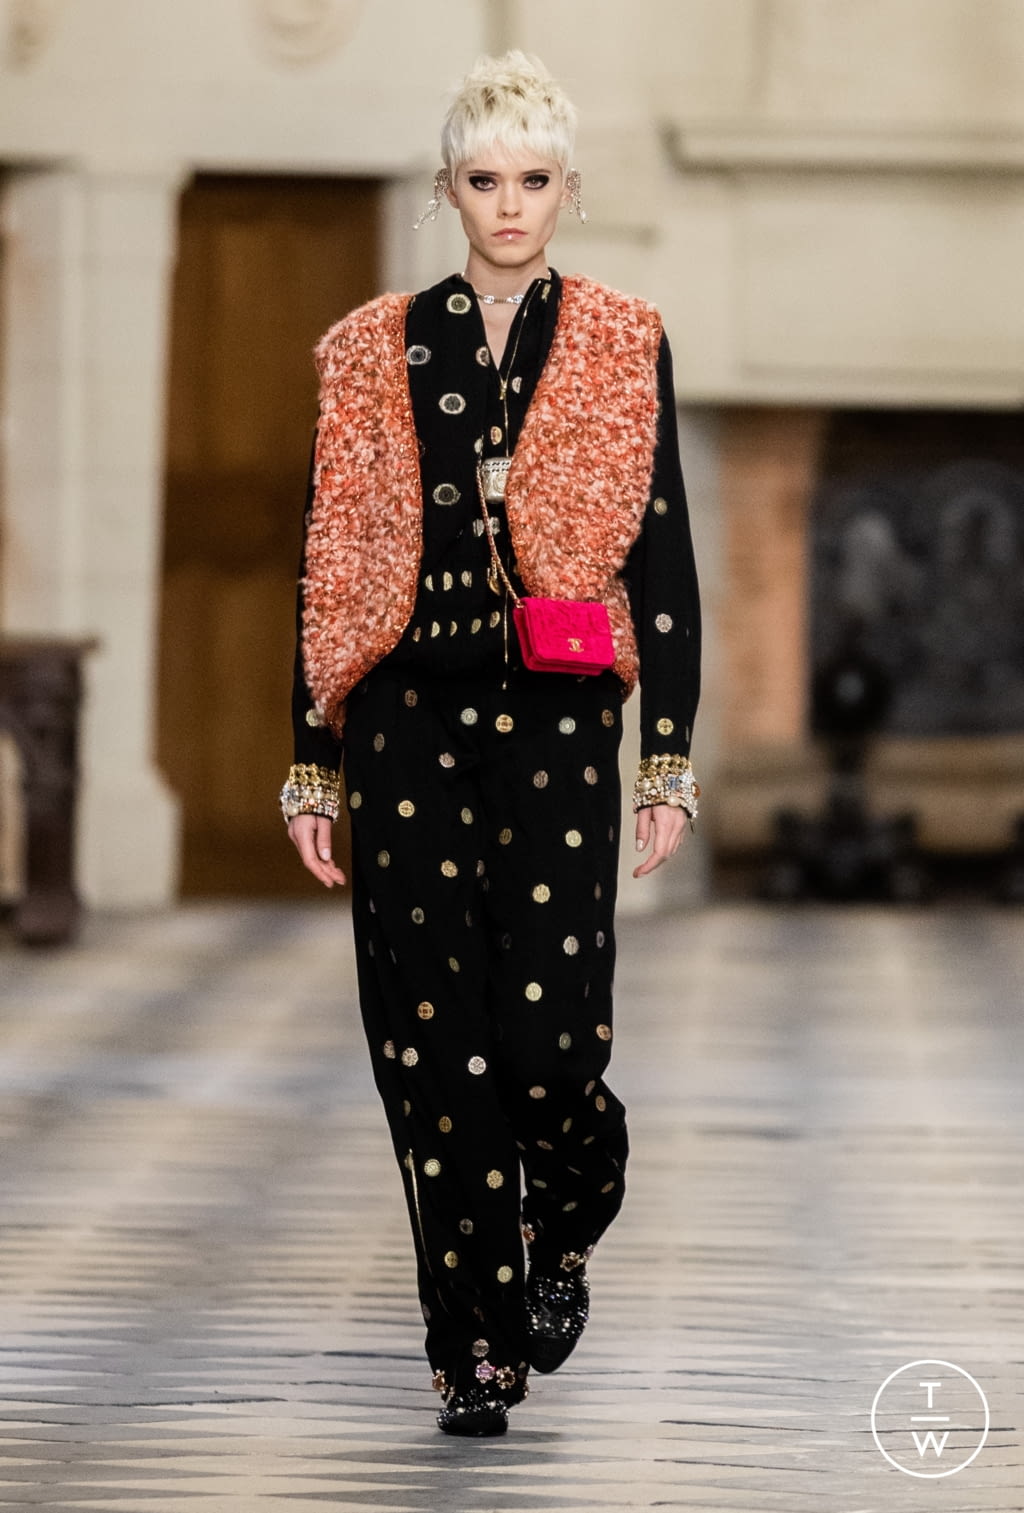 Chanel PF21 womenswear #29 - Tagwalk: The Fashion Search Engine